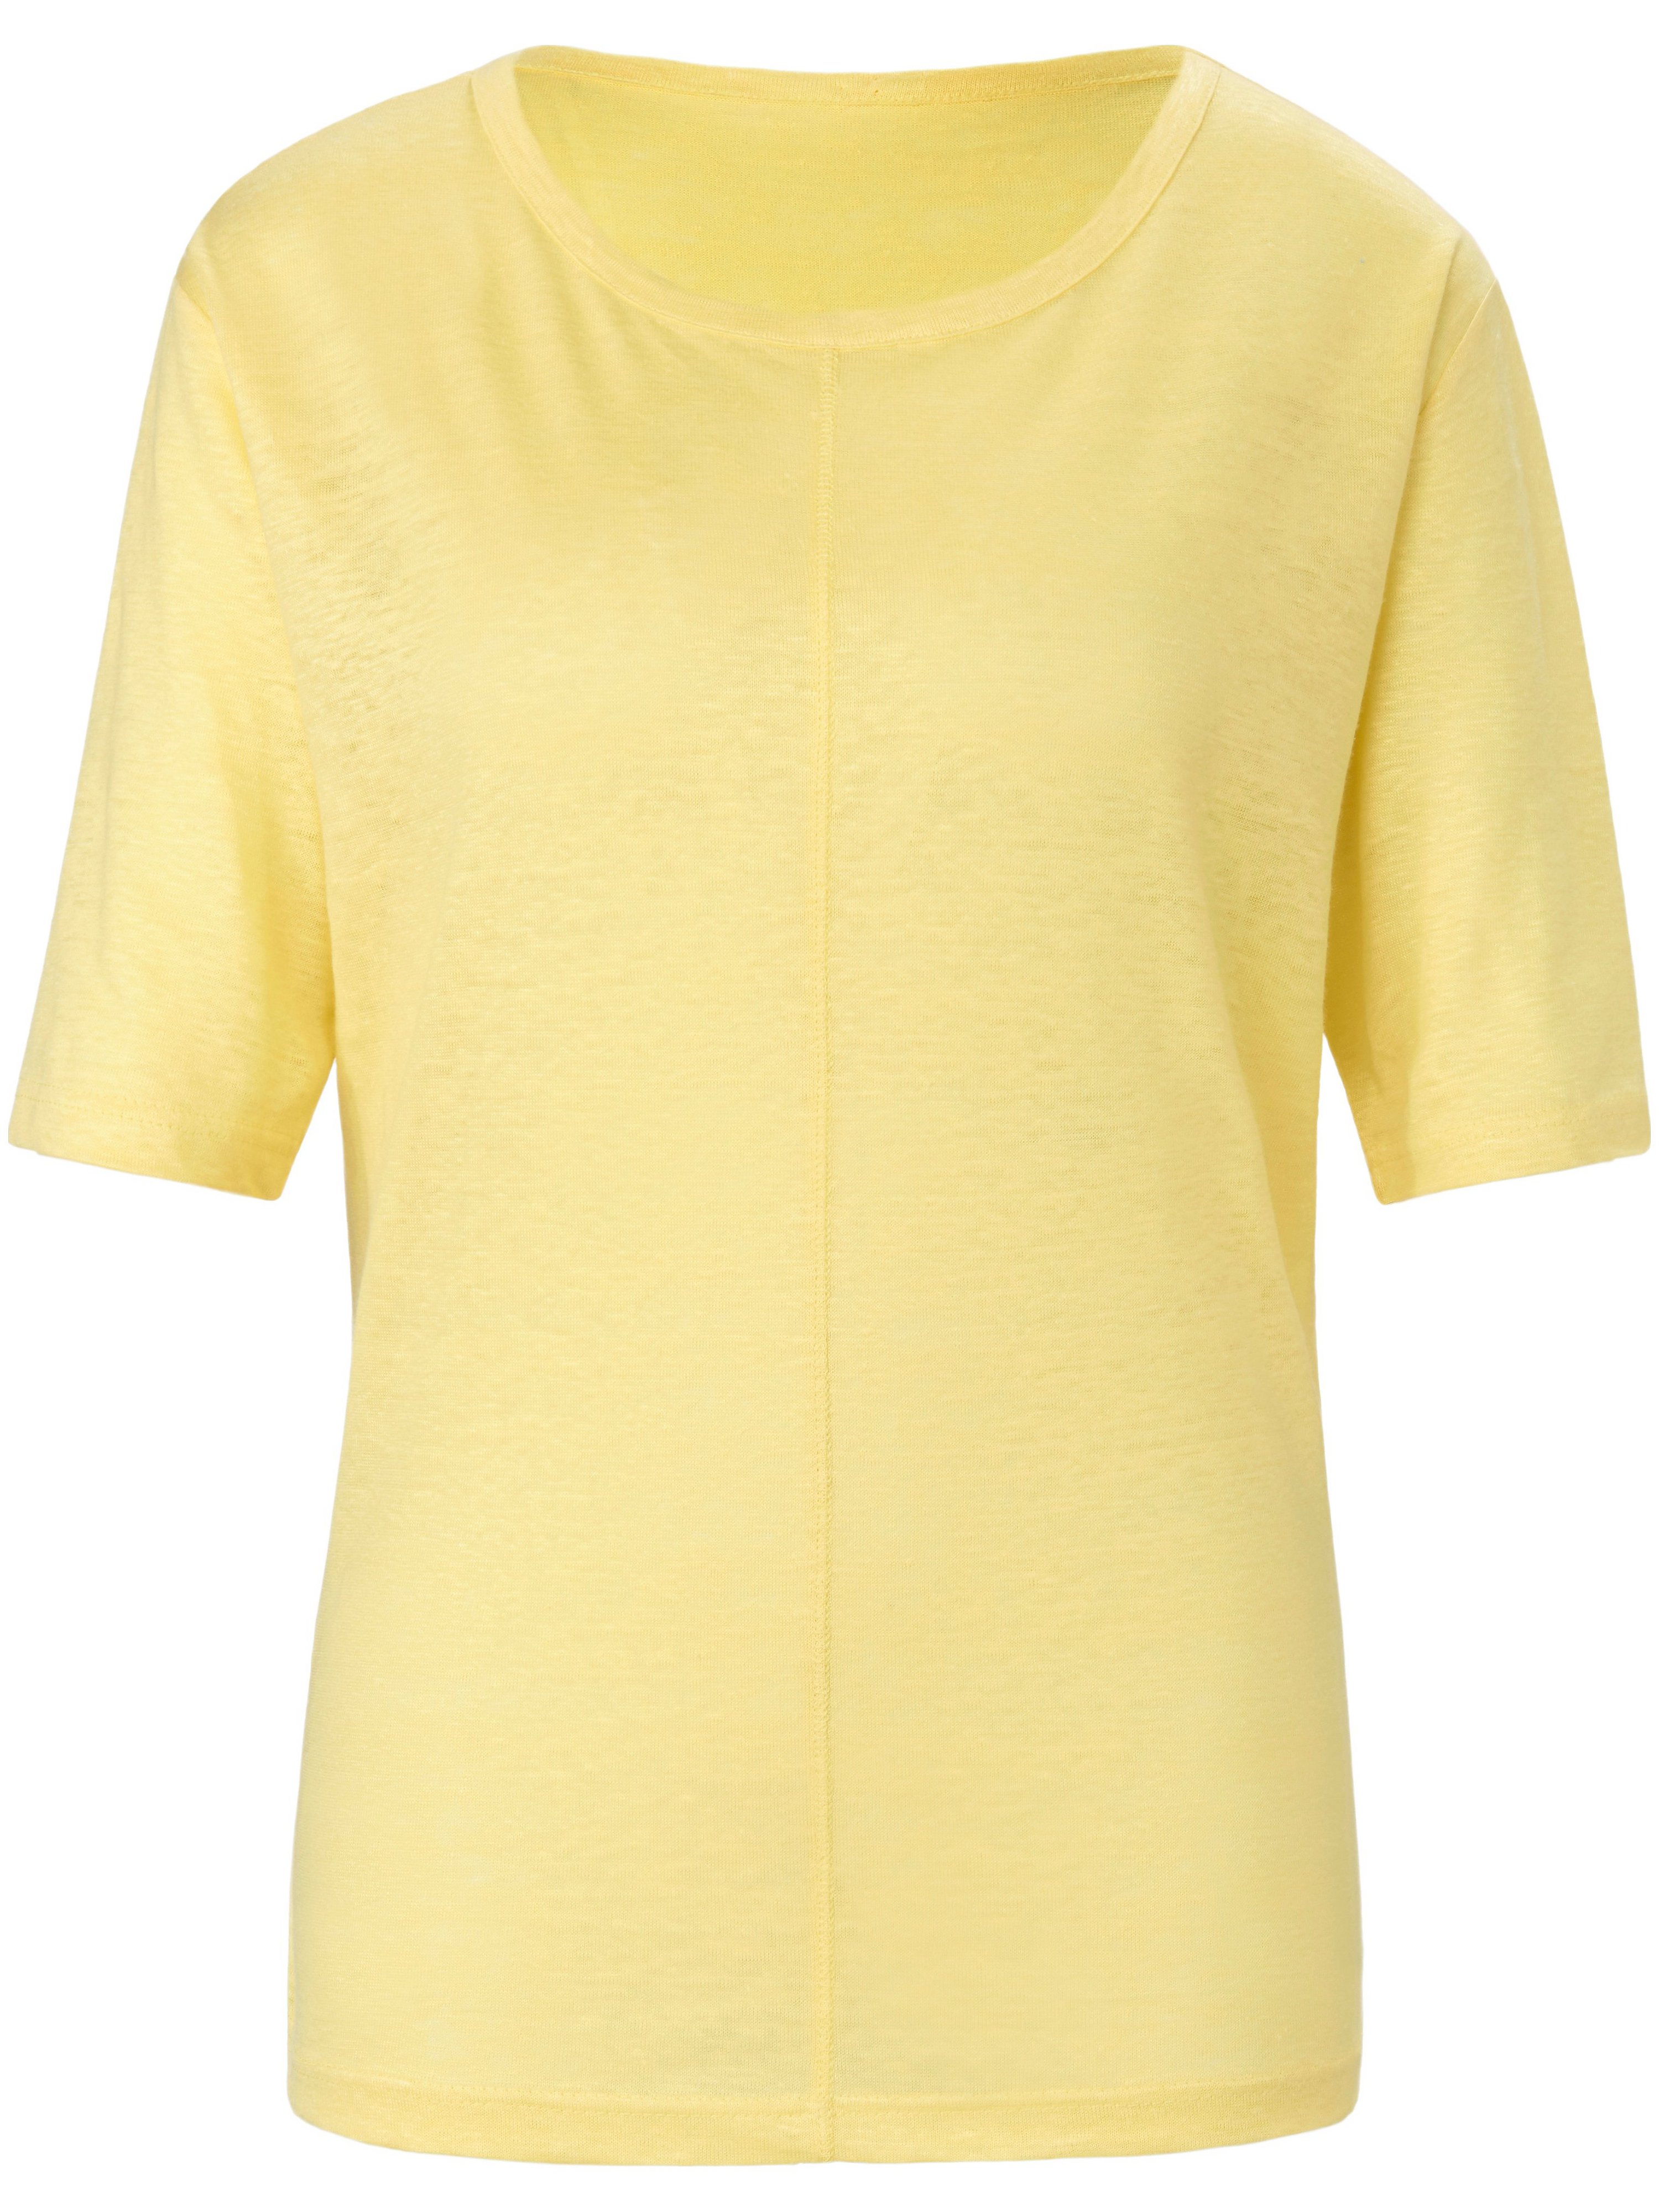 Le T-shirt 100% lin  St. Emile jaune taille 44